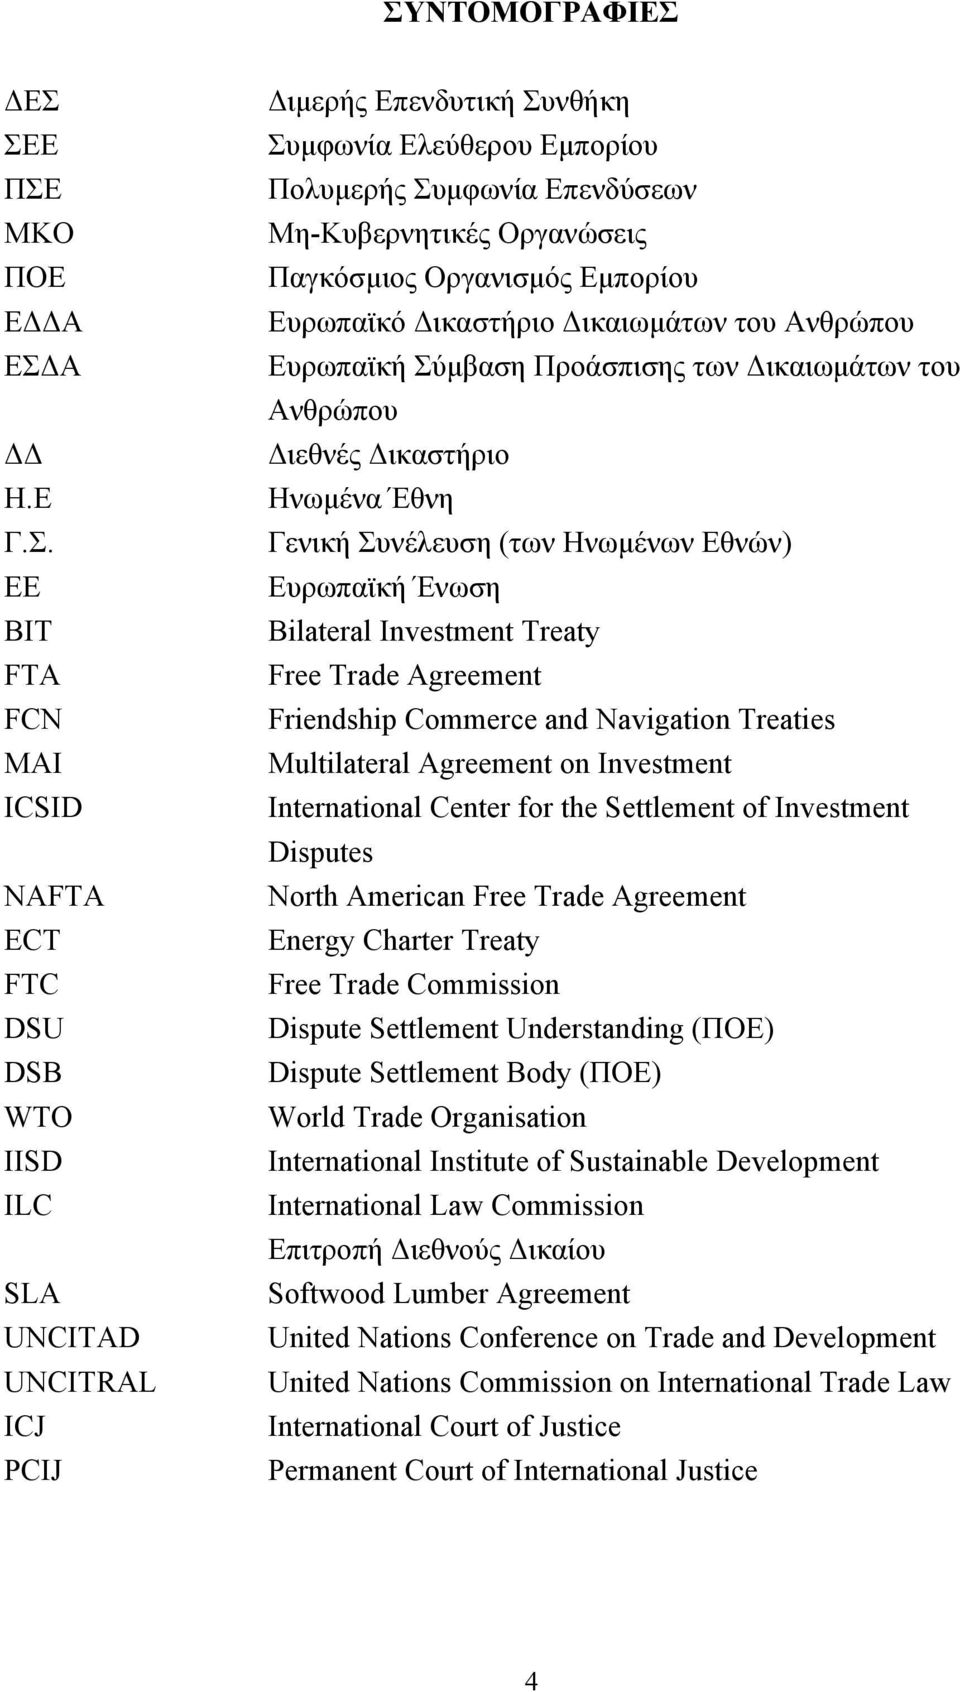 Ανθρώπου Διεθνές Δικαστήριο Ηνωµένα Έθνη Γενική Συνέλευση (των Ηνωµένων Εθνών) Ευρωπαϊκή Ένωση Bilateral Investment Treaty Free Trade Agreement Friendship Commerce and Navigation Treaties